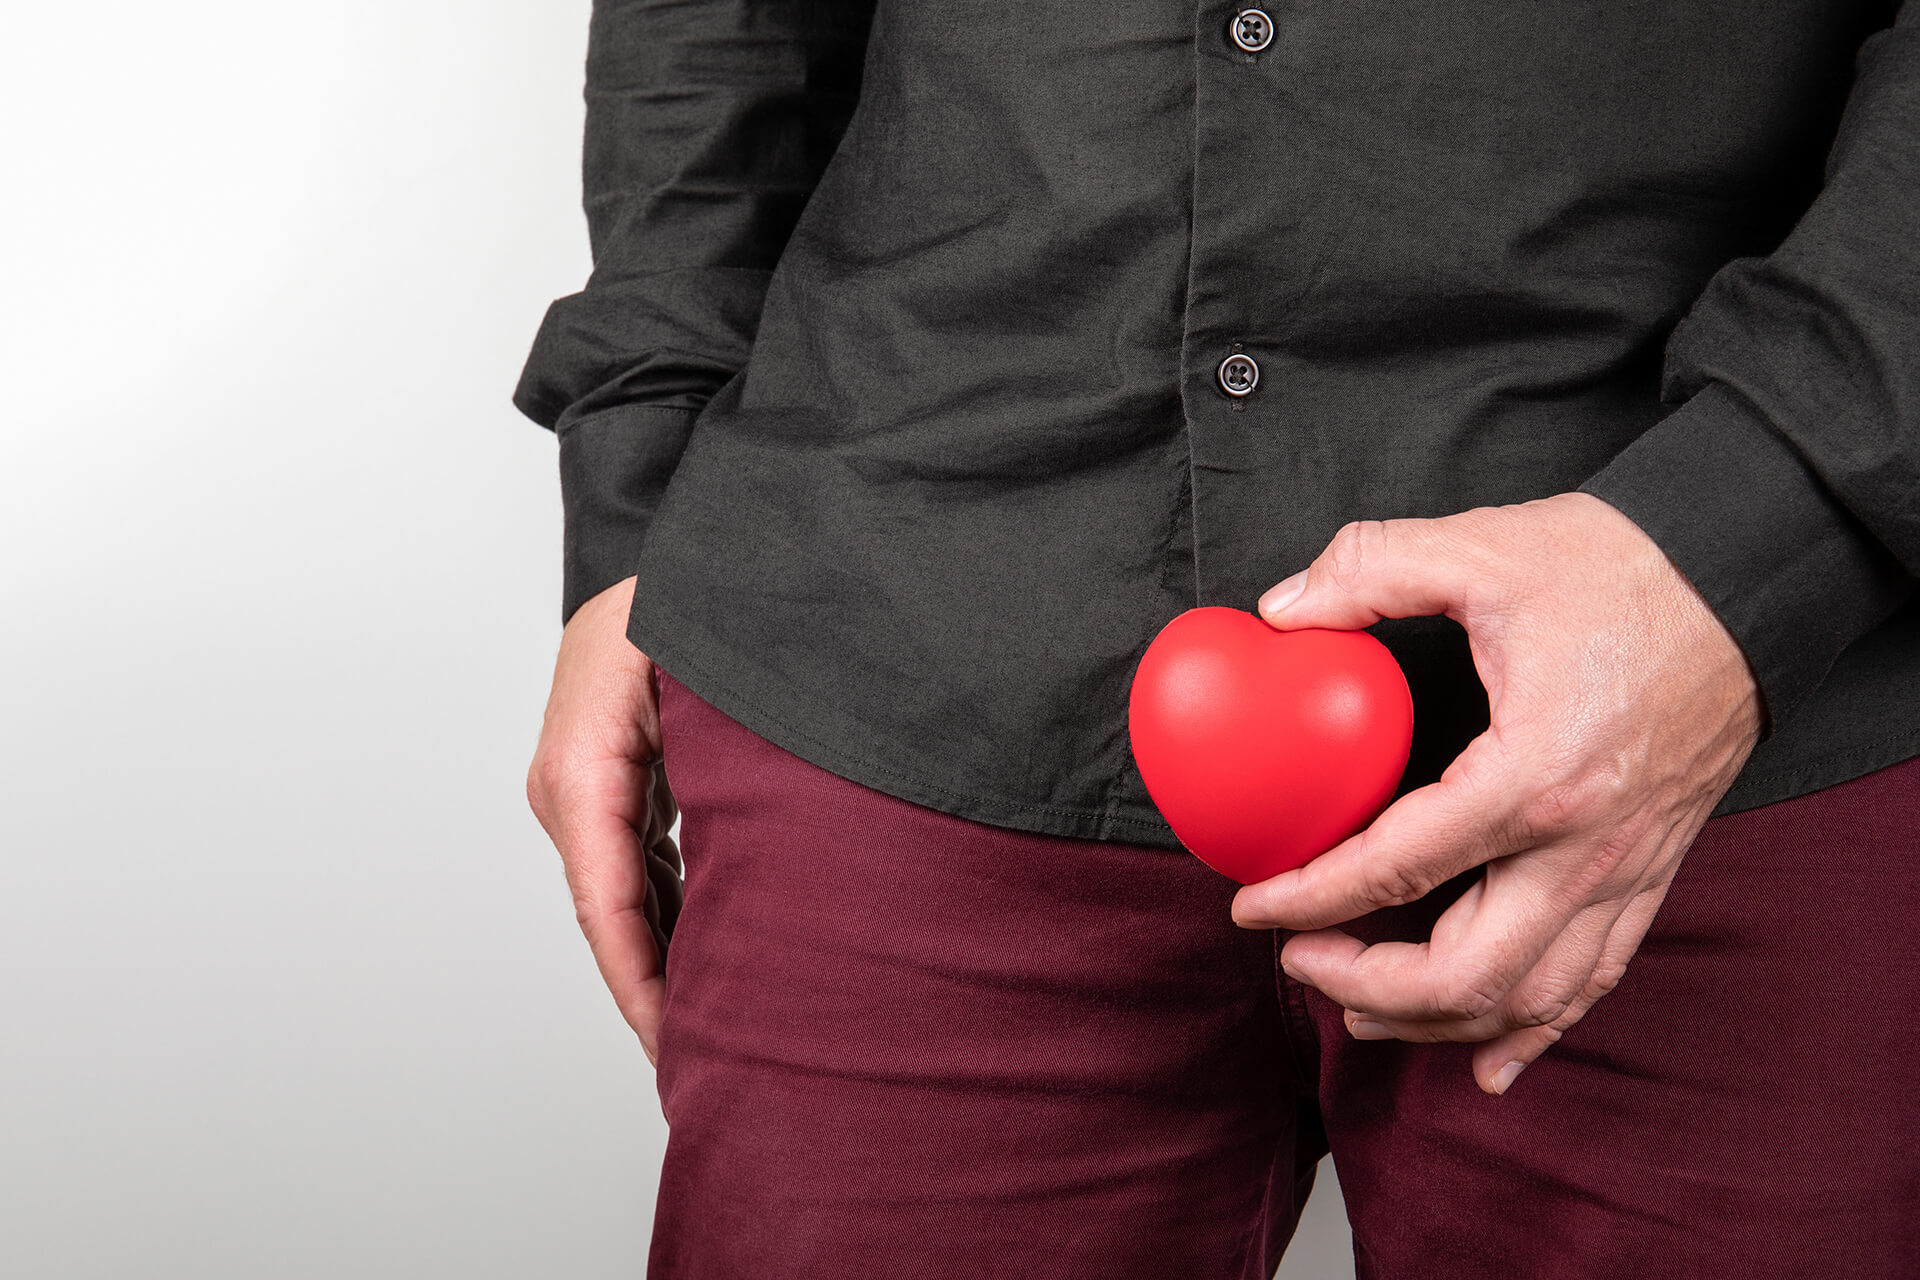 Man sieht den Unterleib von einem Mann in roter Hose und schwarzen Hemd. Vor dem Intimbereich hält er ein kleines rotes Herz aus Kunststoff in Rot.